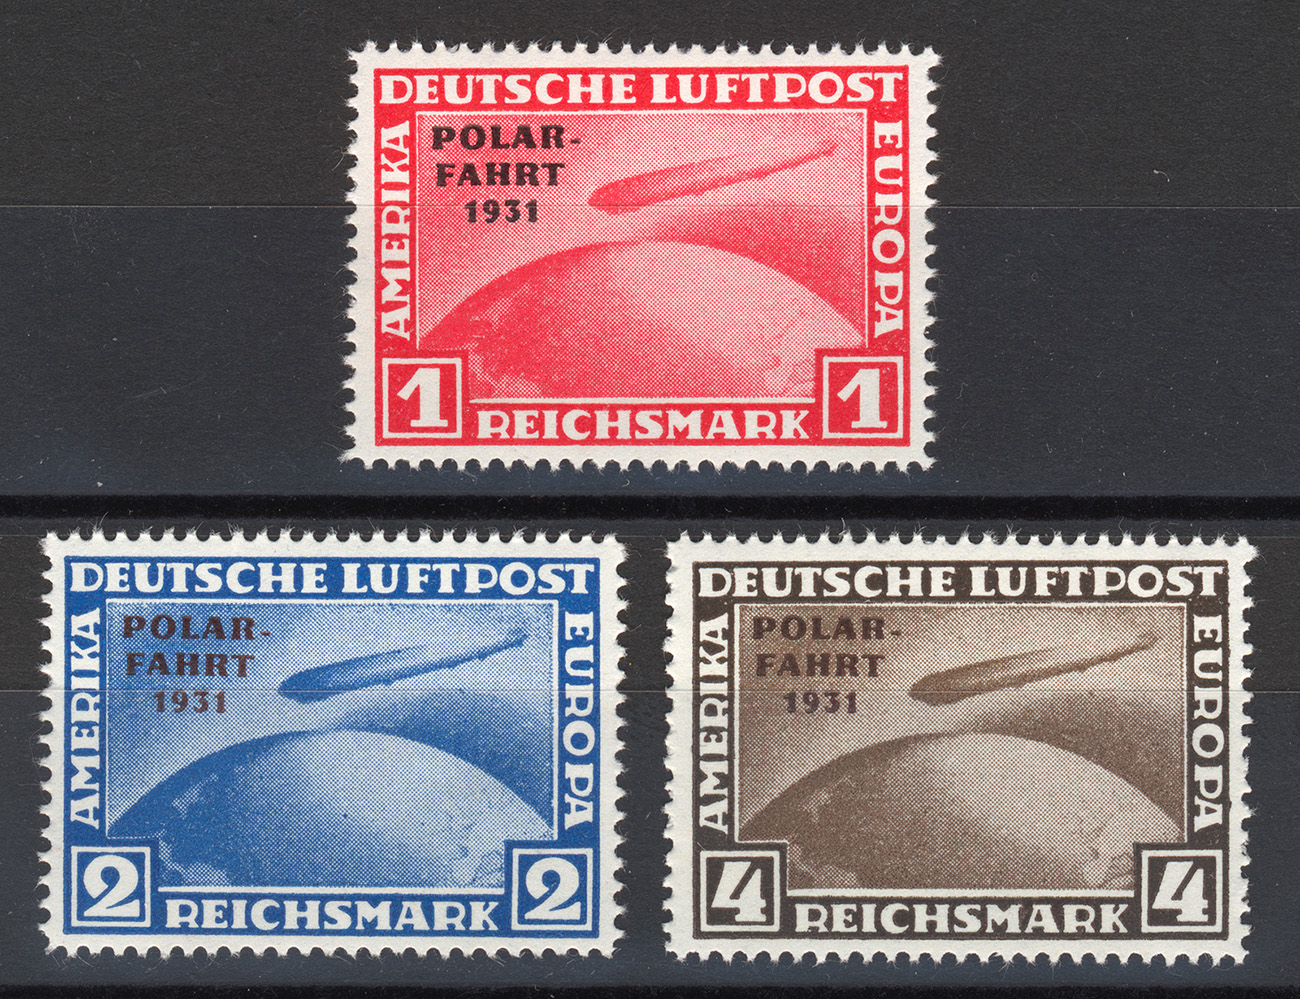 Sie erhalten den Zeppelin Satz: Polar-Fahrt als Nachdrucke / Reproduktion zu den Originalmarken aus dem Deutschen Reich von 1931